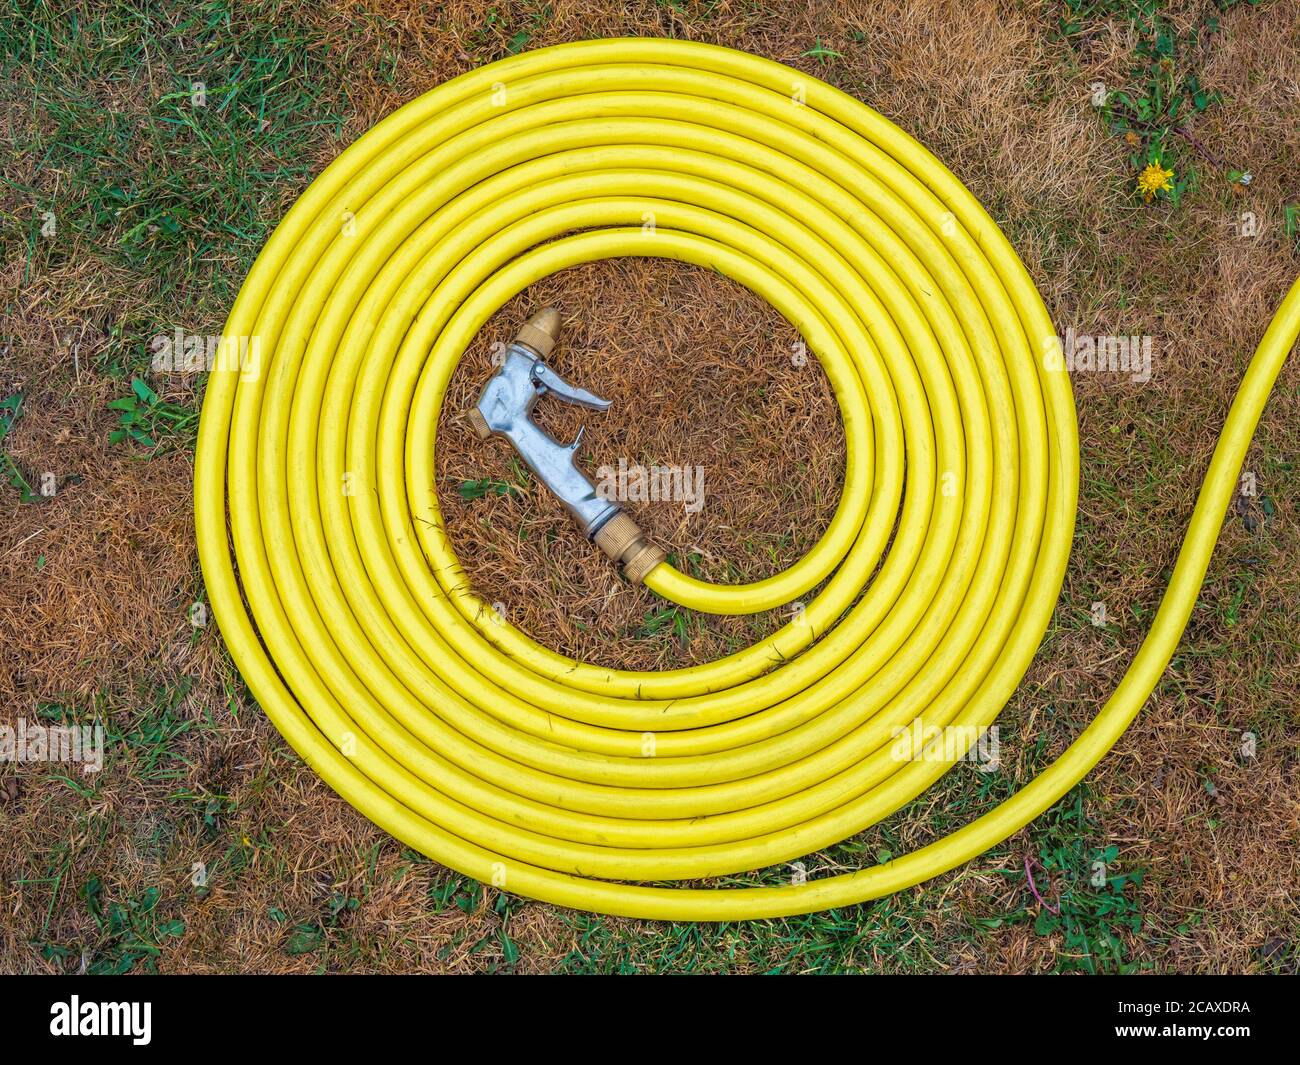 Ein gelber Wasserschlauch ohne Brandmarke, mit angefügter Spritzpistole, auf ausgetrockentem braunem Gras in einem Gebiet, in dem ein Wassermangel zu einem Schlauchleitungsverbot geführt hat. Stockfoto